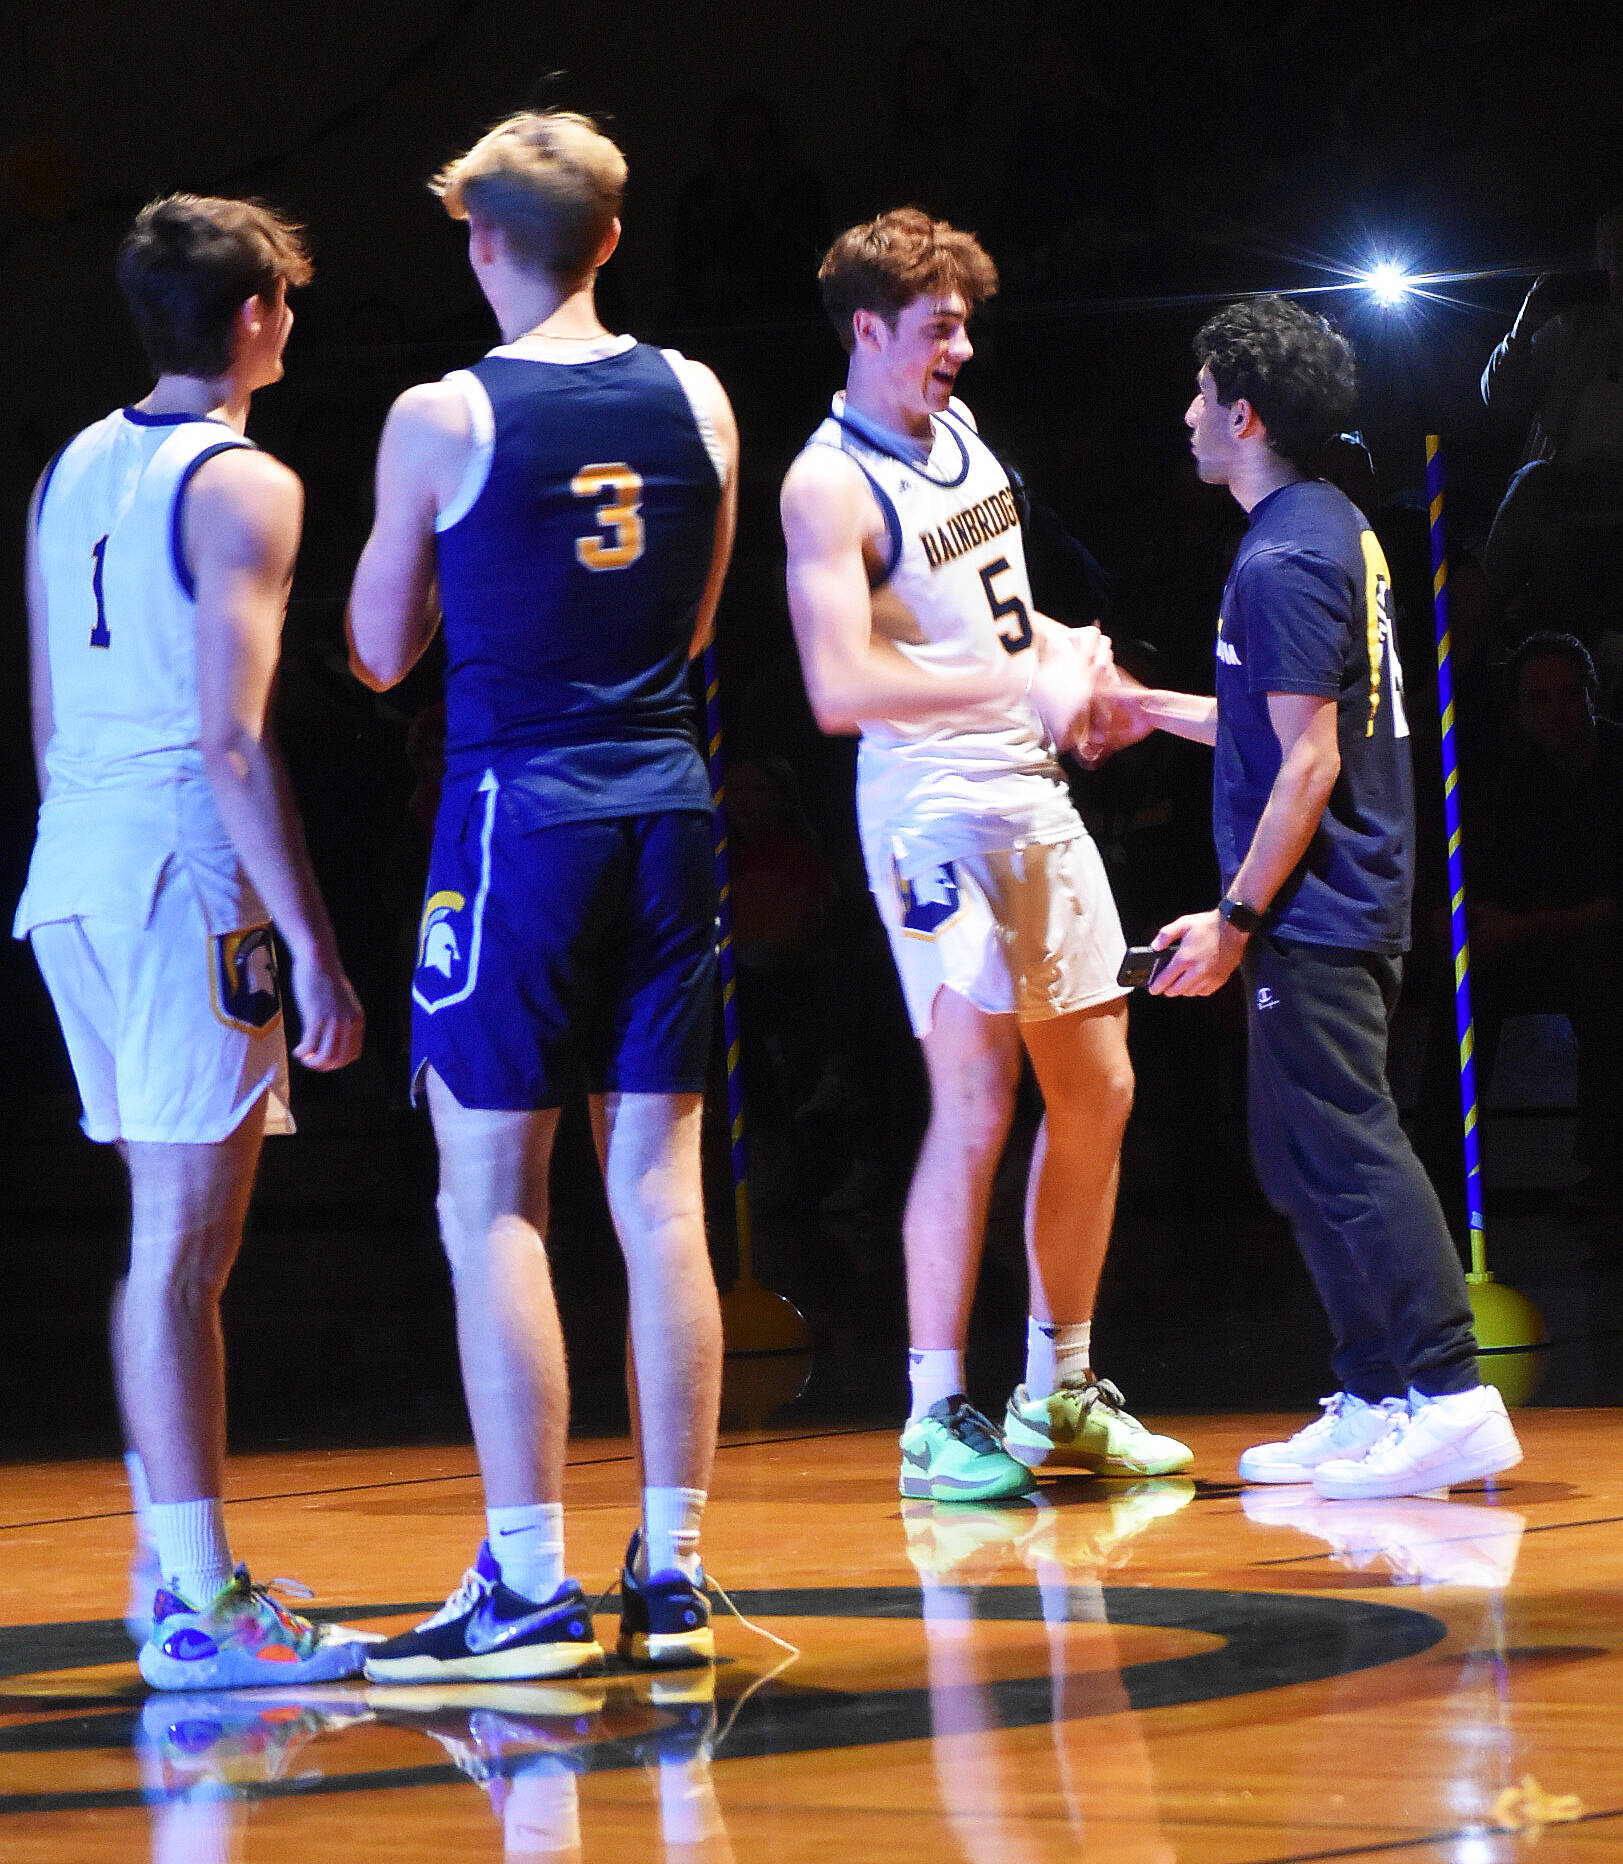 The Bainbridge boys basketball team is introduced to the Spartan community.